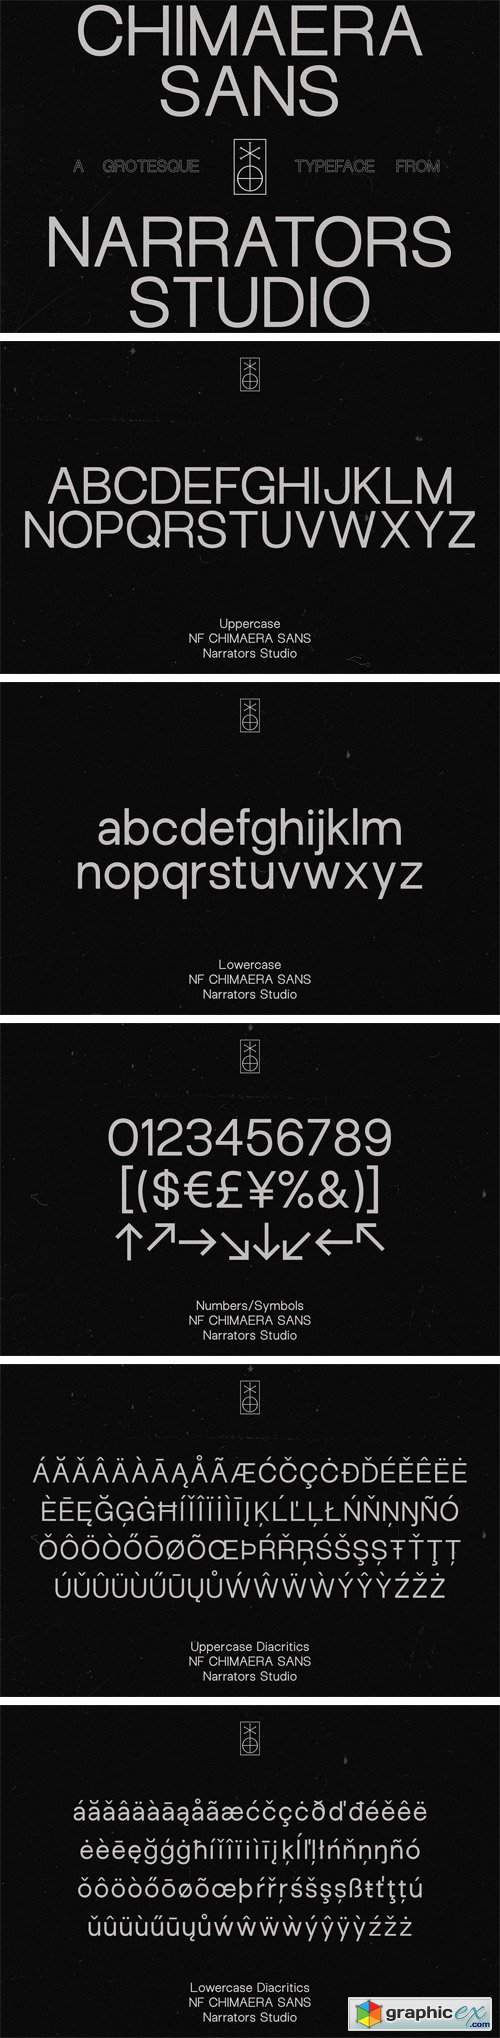 NF Chimaera - Grotesque Sans Serif